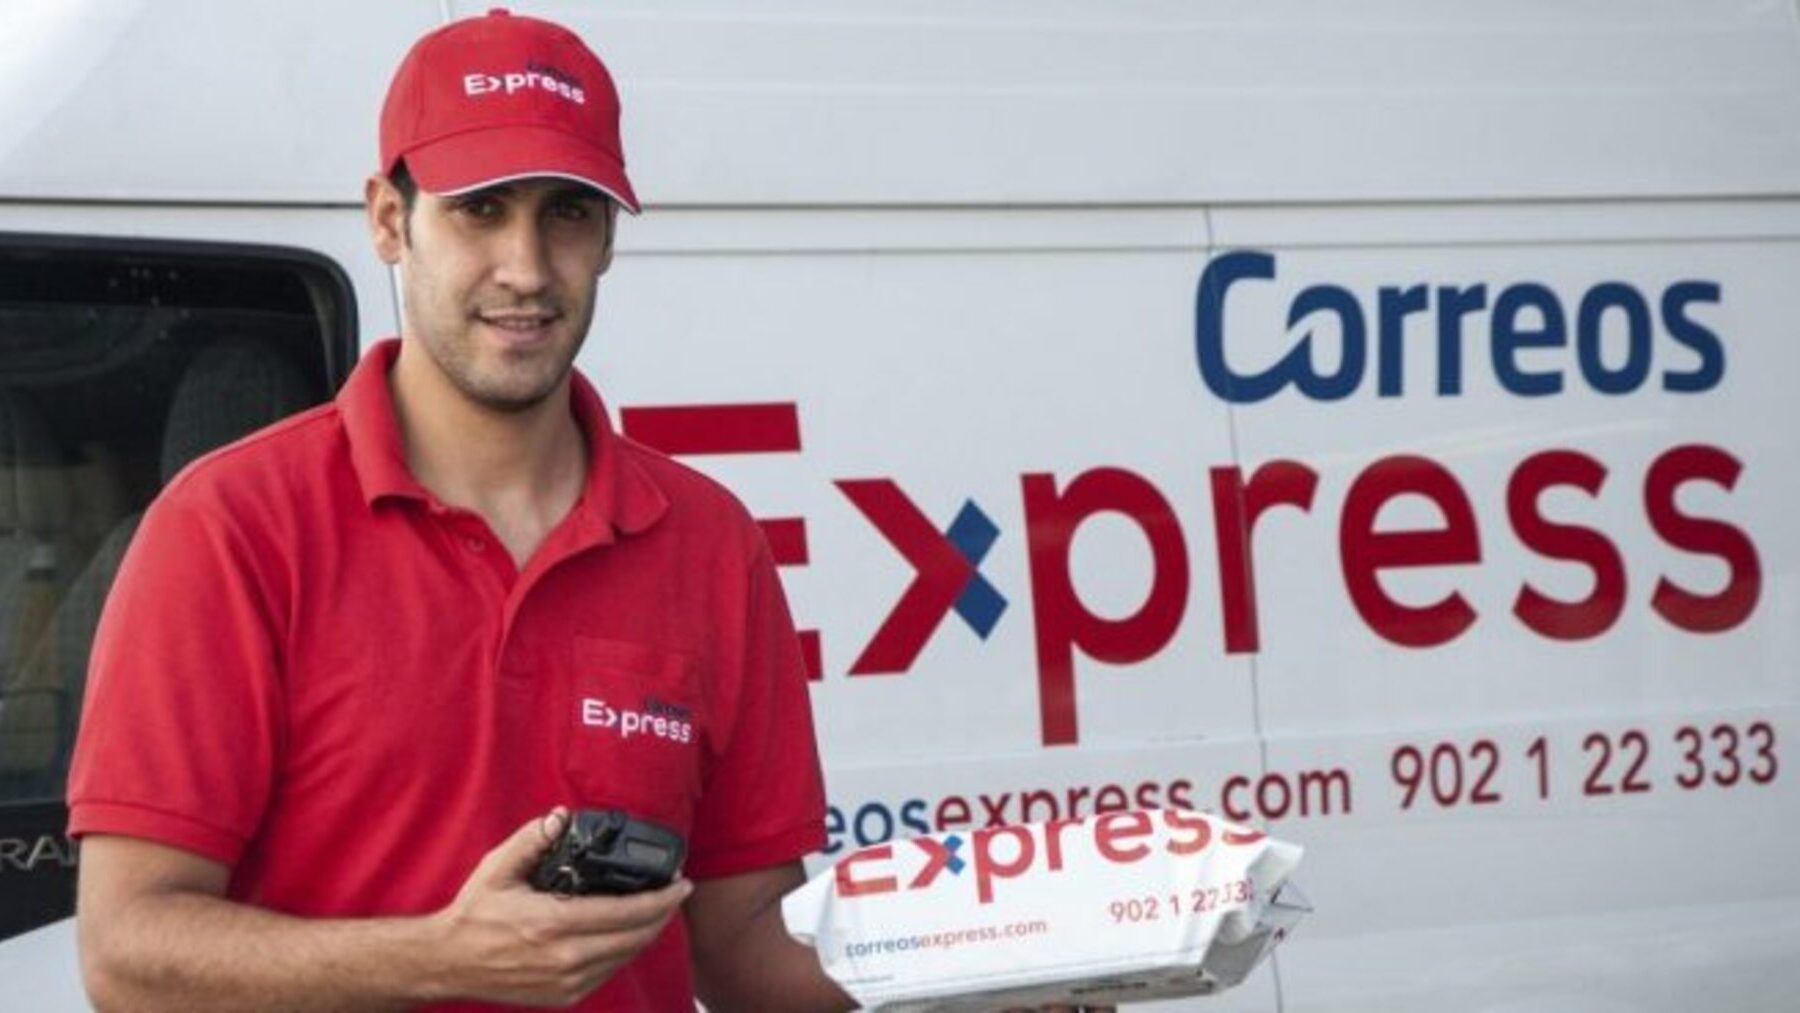 Correos Express